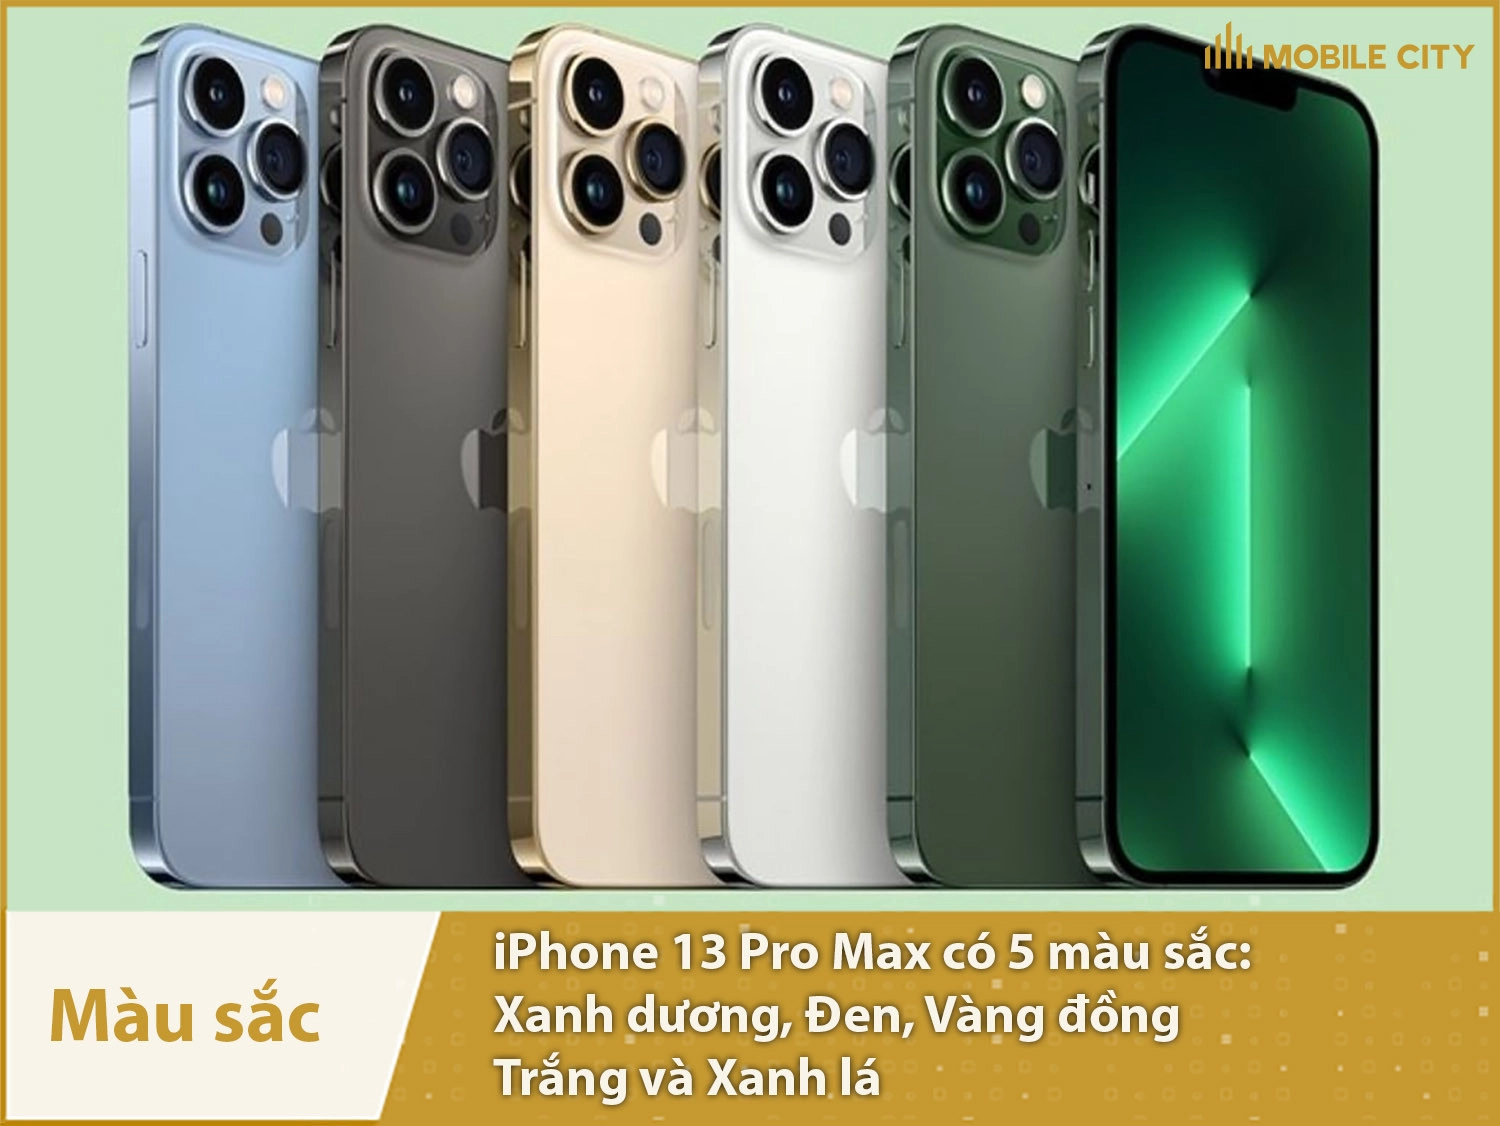  iphone-13-pro-max-old-danh-gia-mau-sac